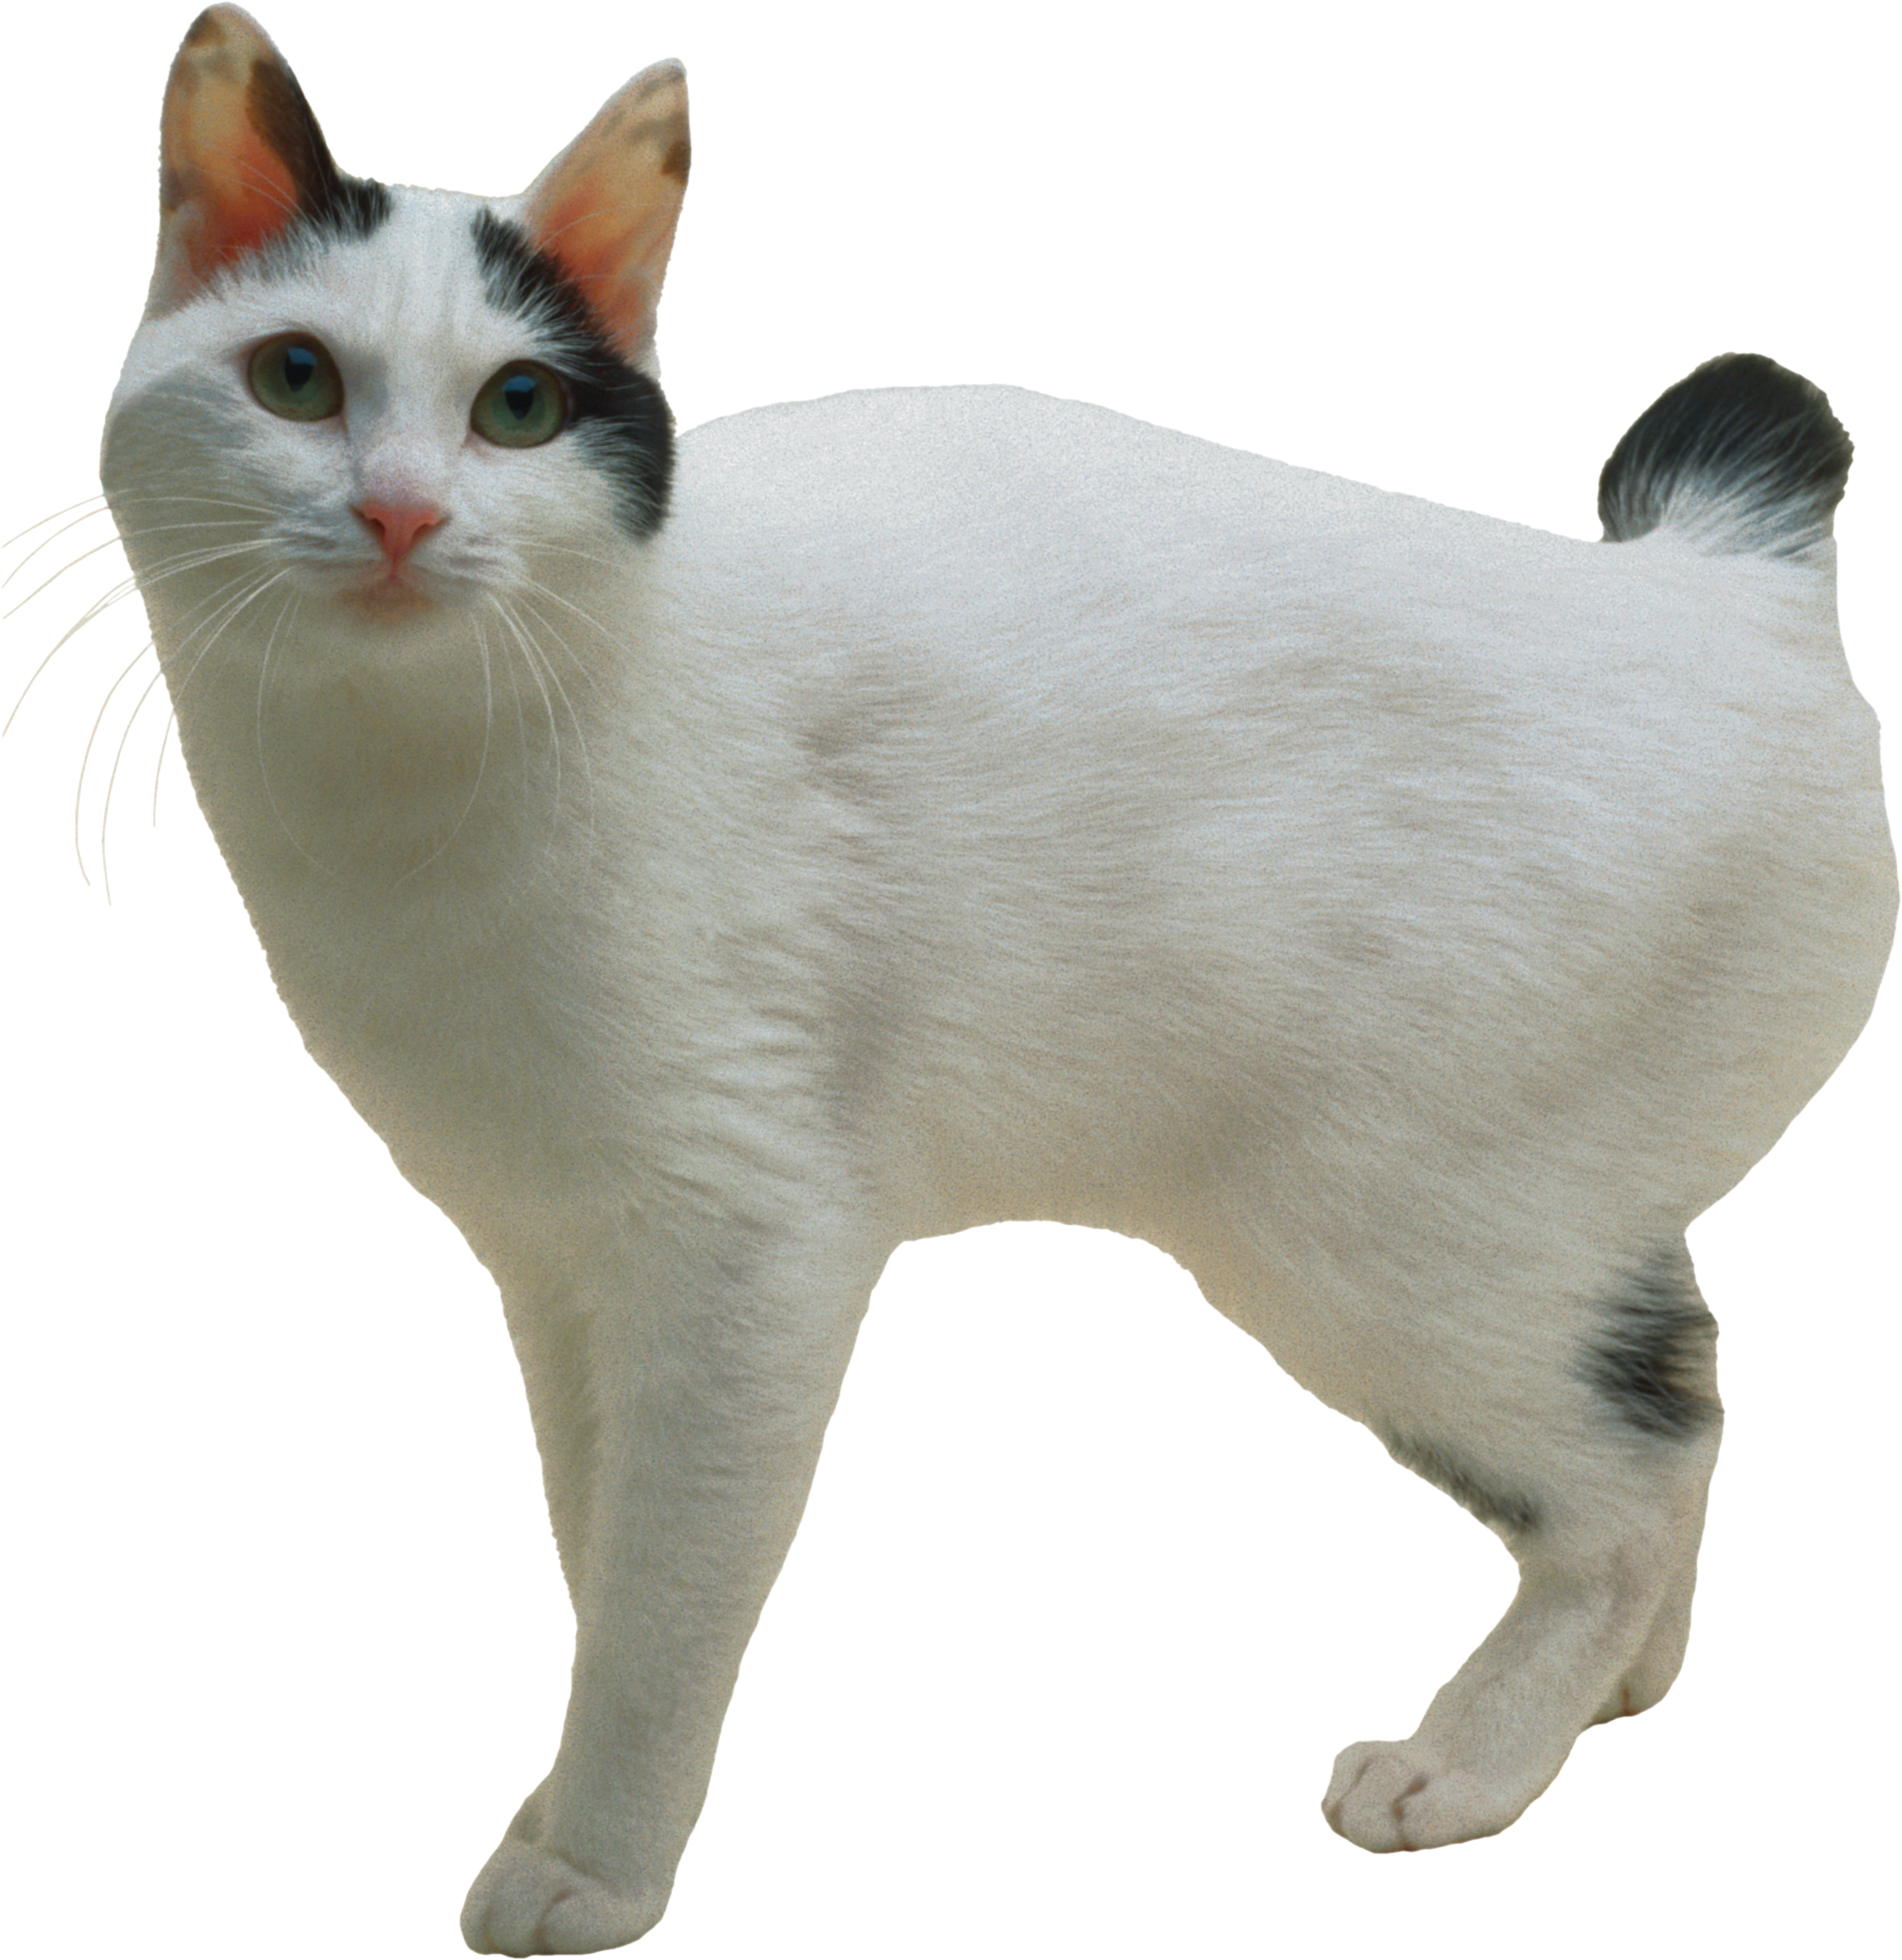 Cat PNG